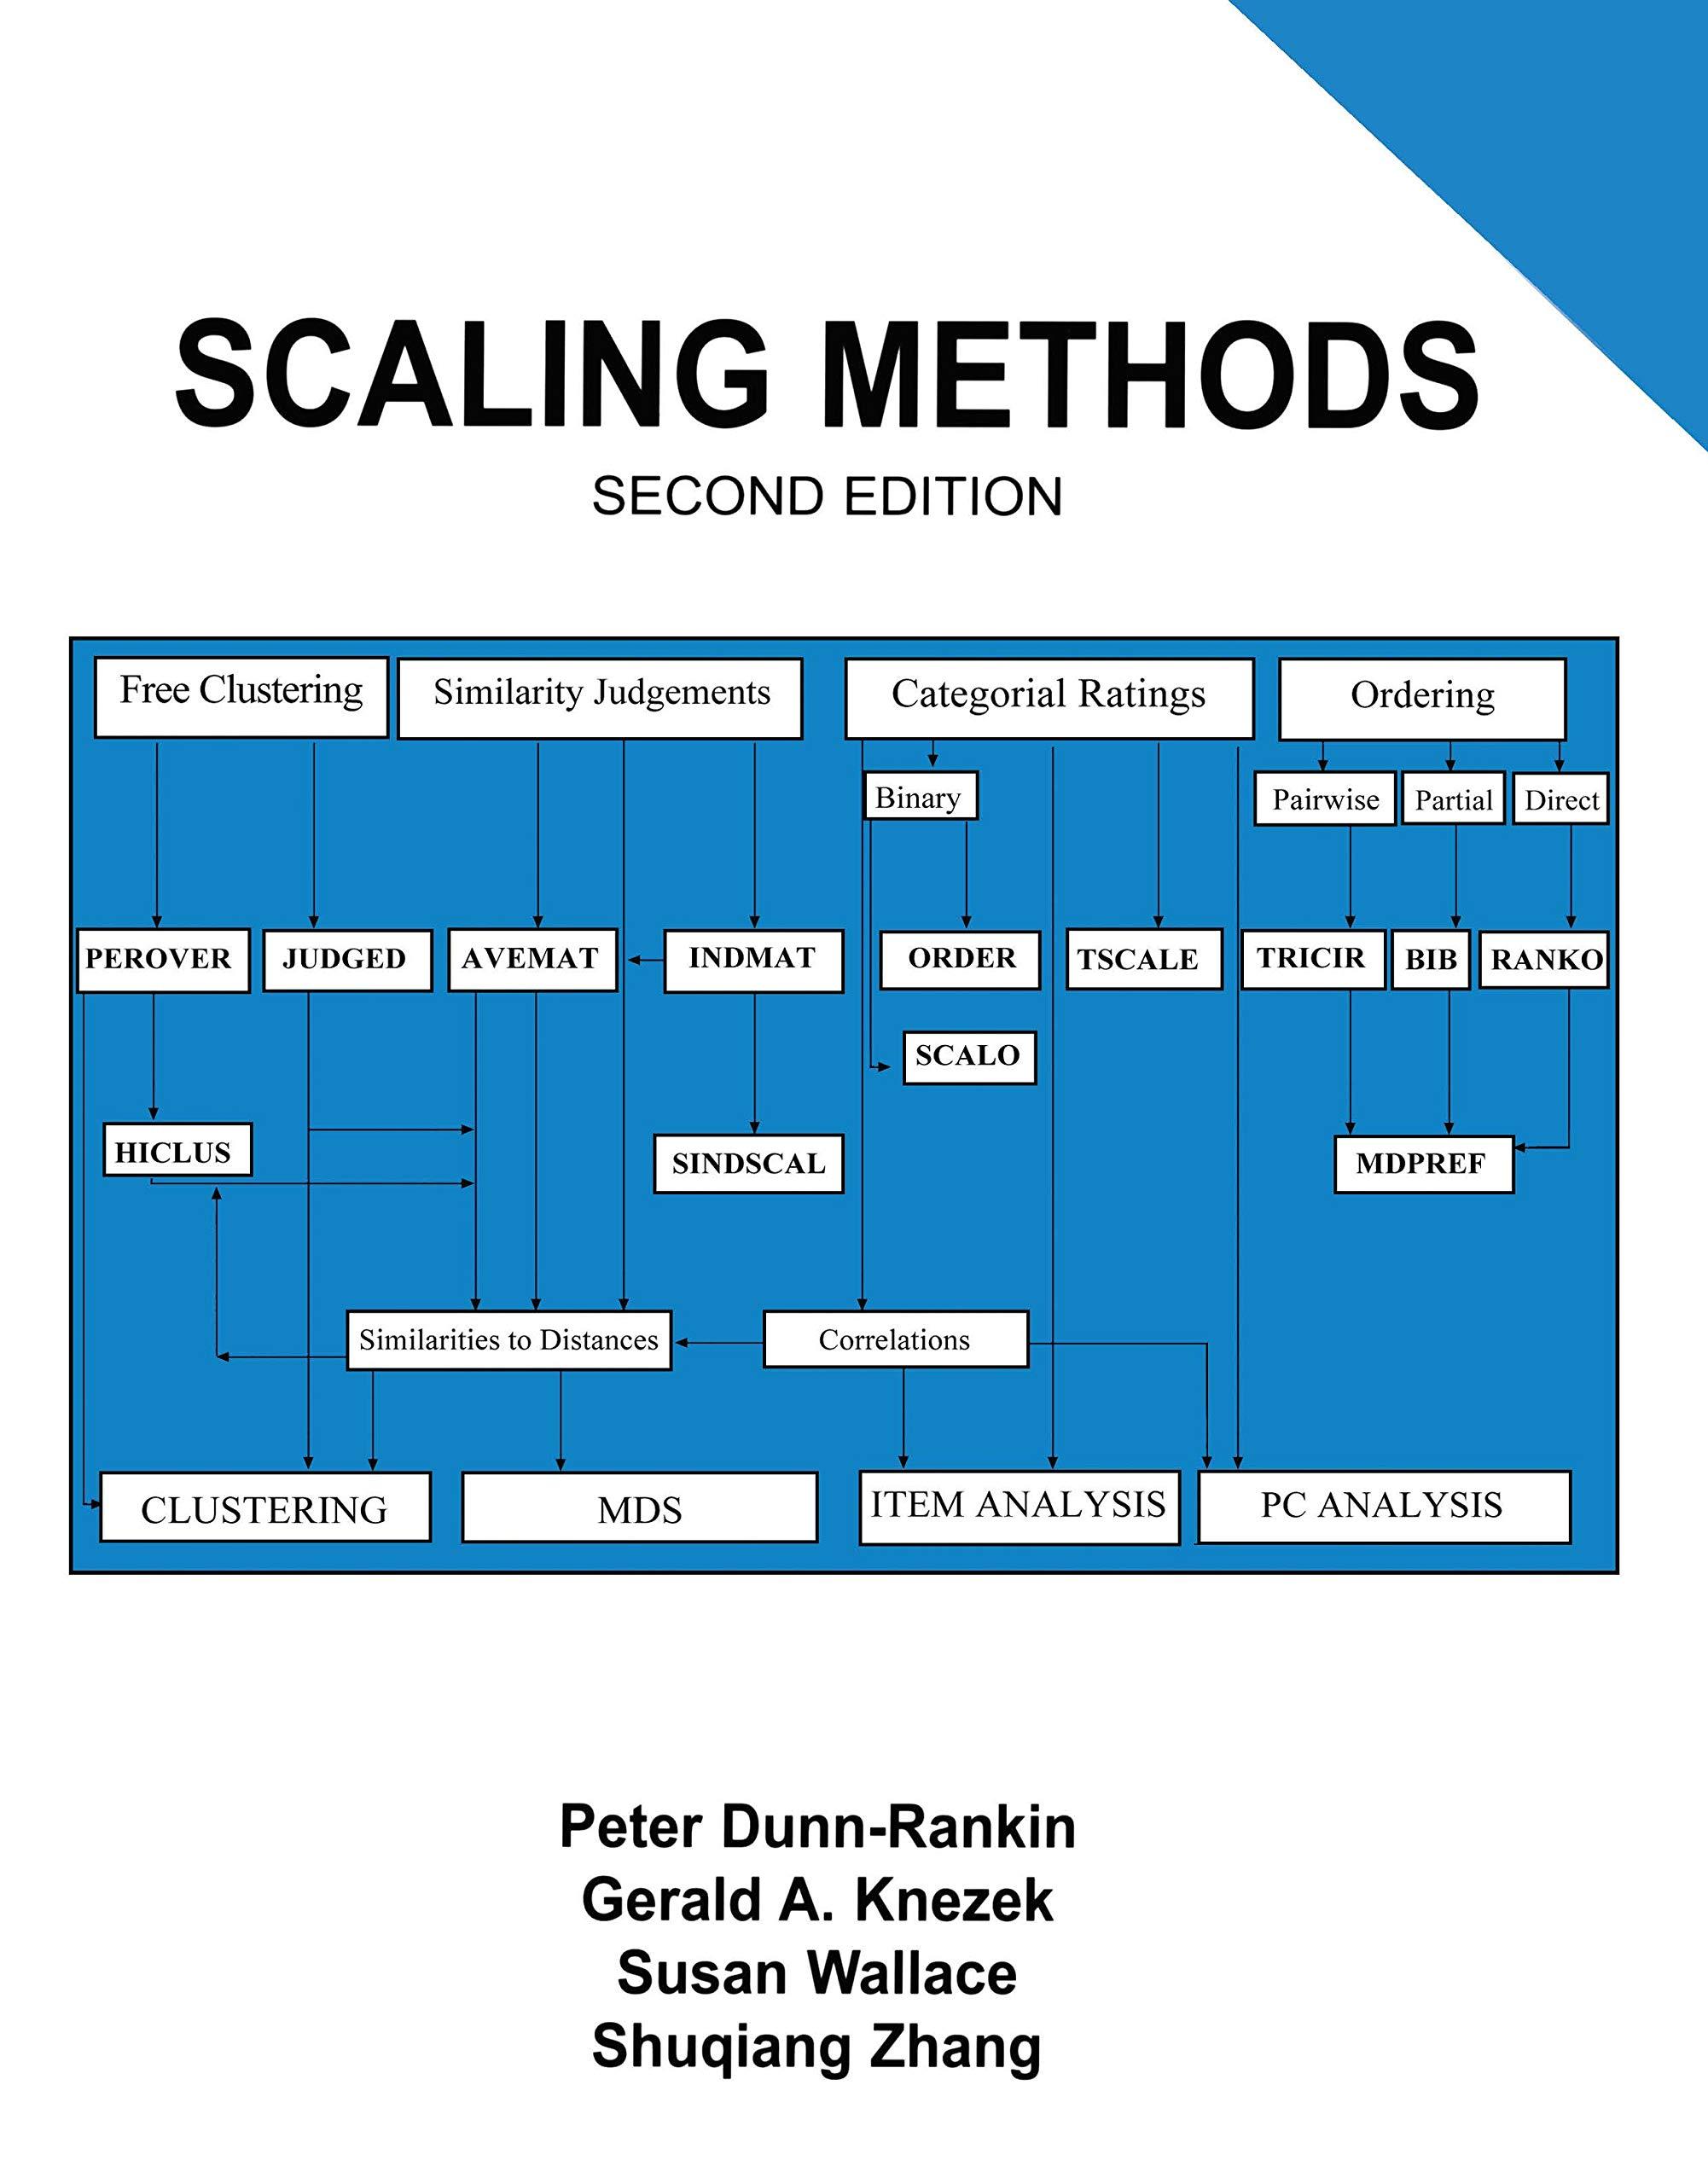 scaling methods 2nd edition peter dunn-rankin, gerald a. knezek, susan wallace, shuqiang zhang 1138143022,